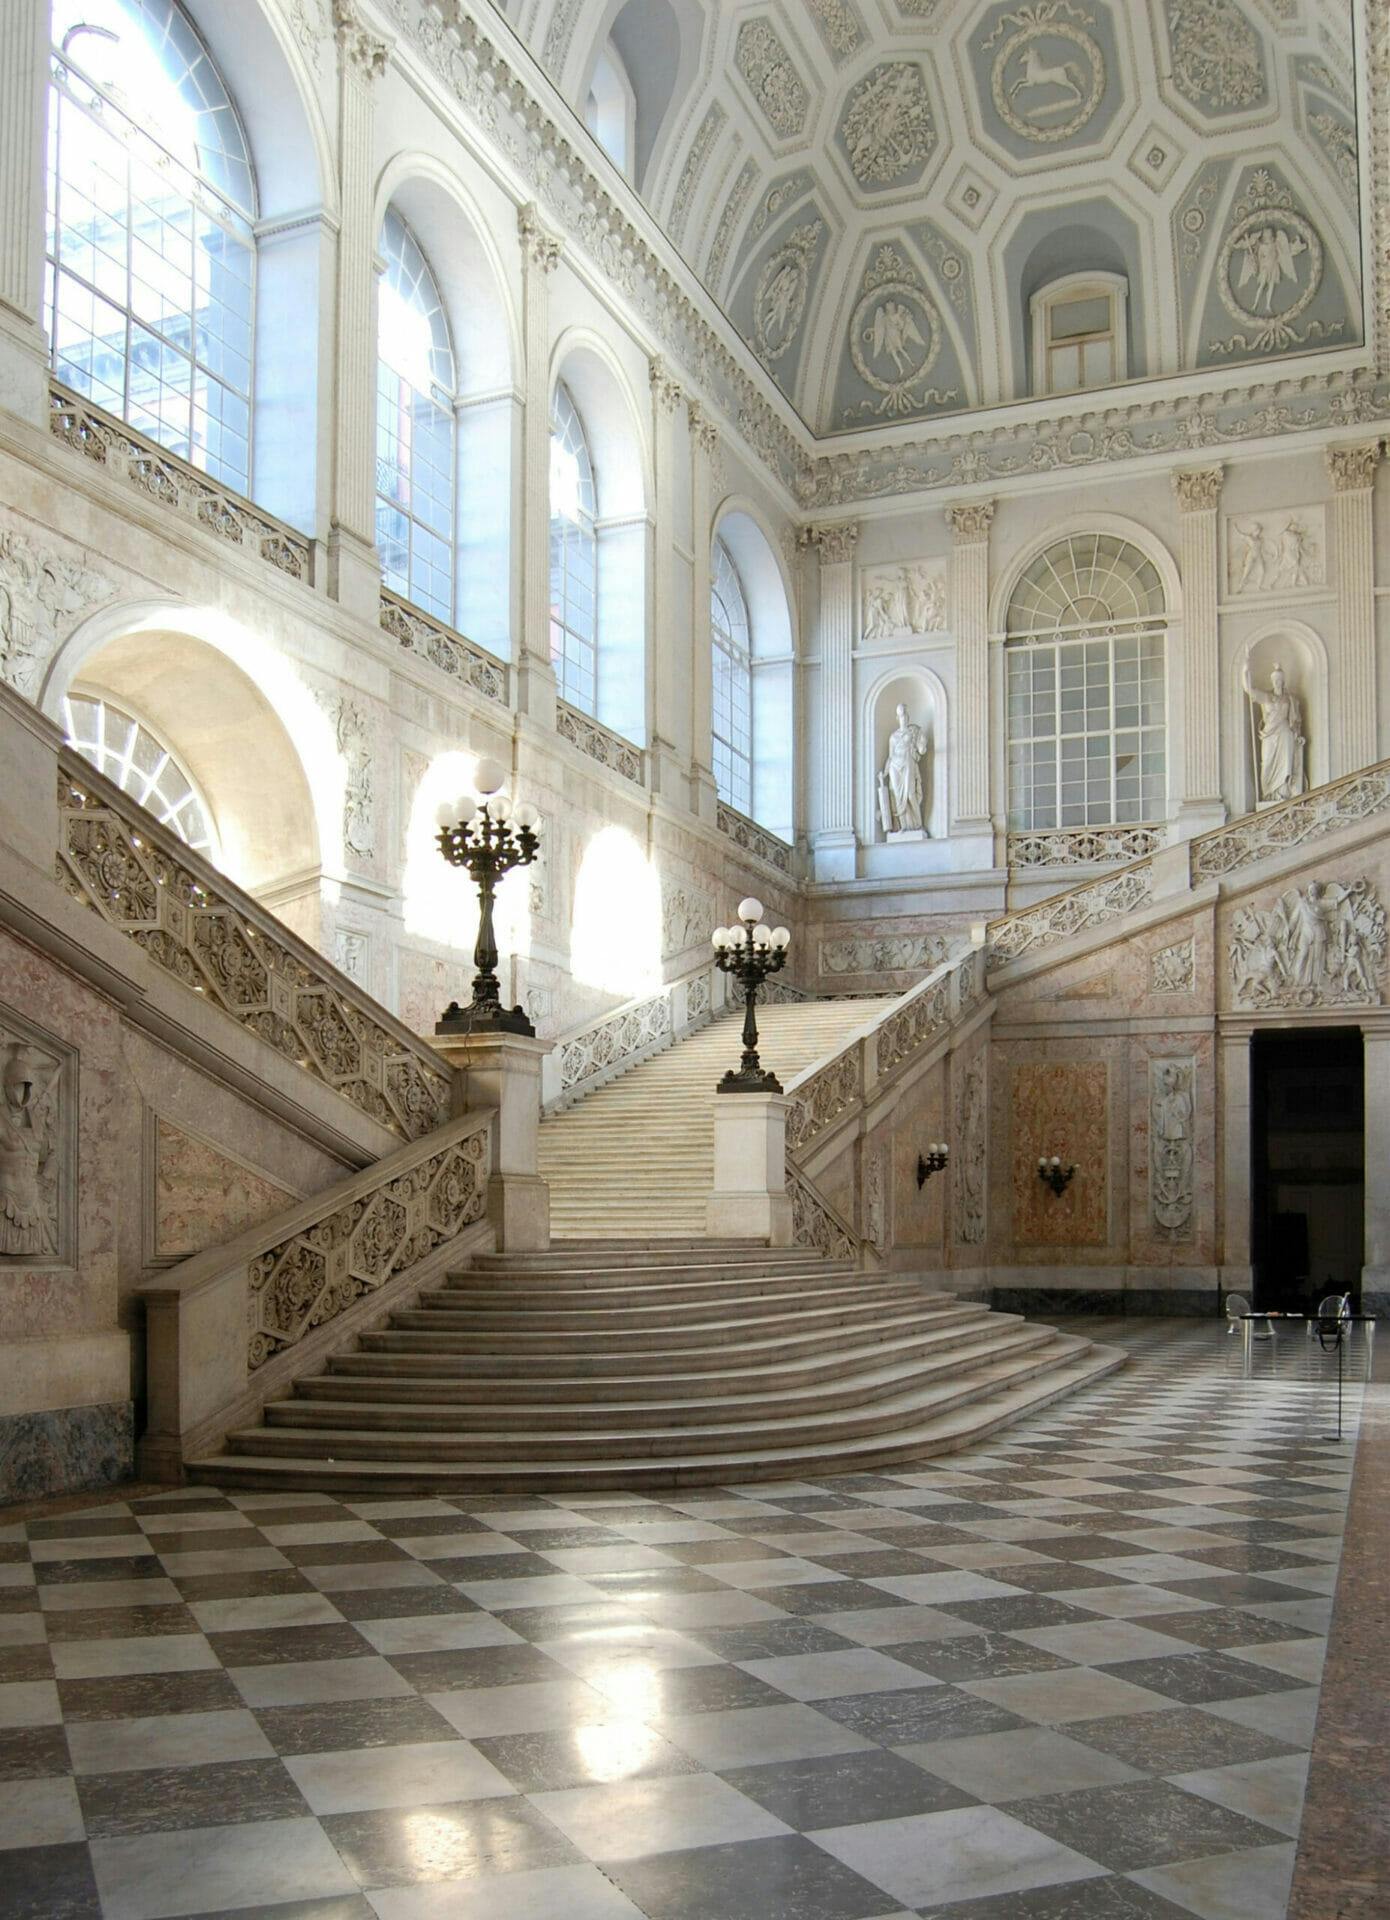 Visita guiada privada al Palacio Real y la zona monumental de Nápoles